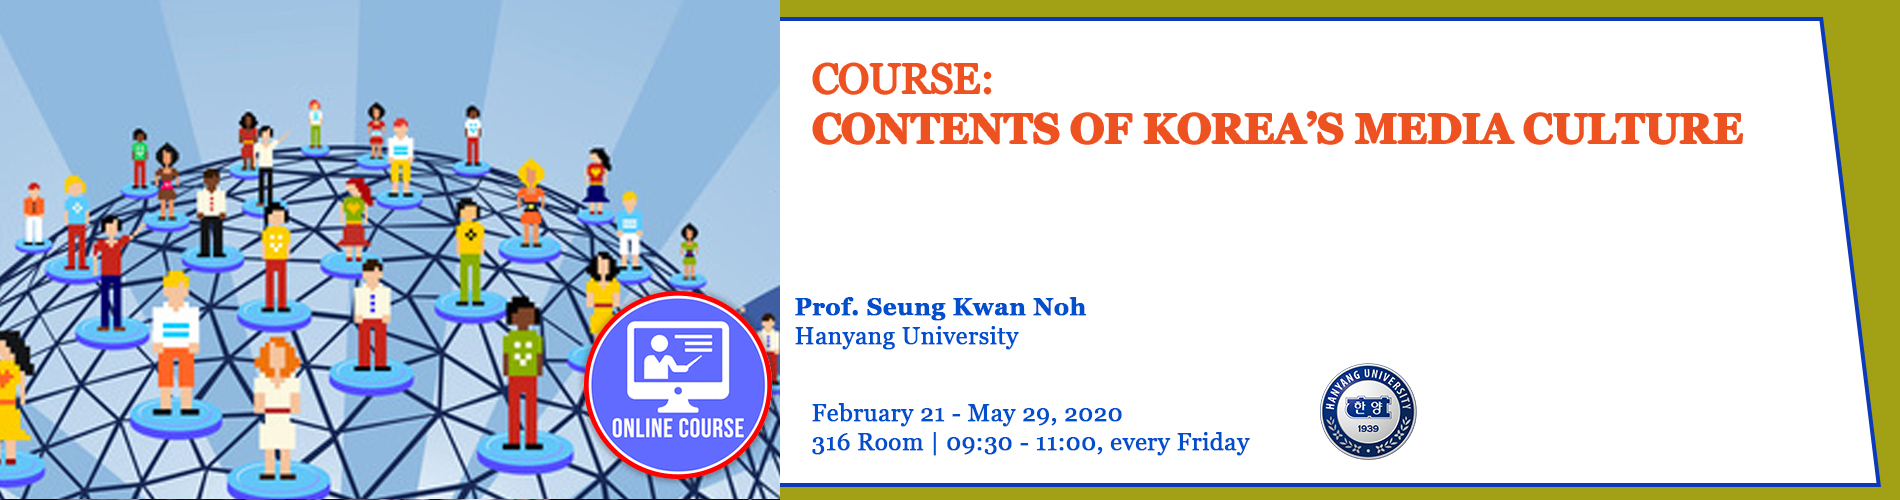 21.02.2020 - Contents of Korea’s Media Culture